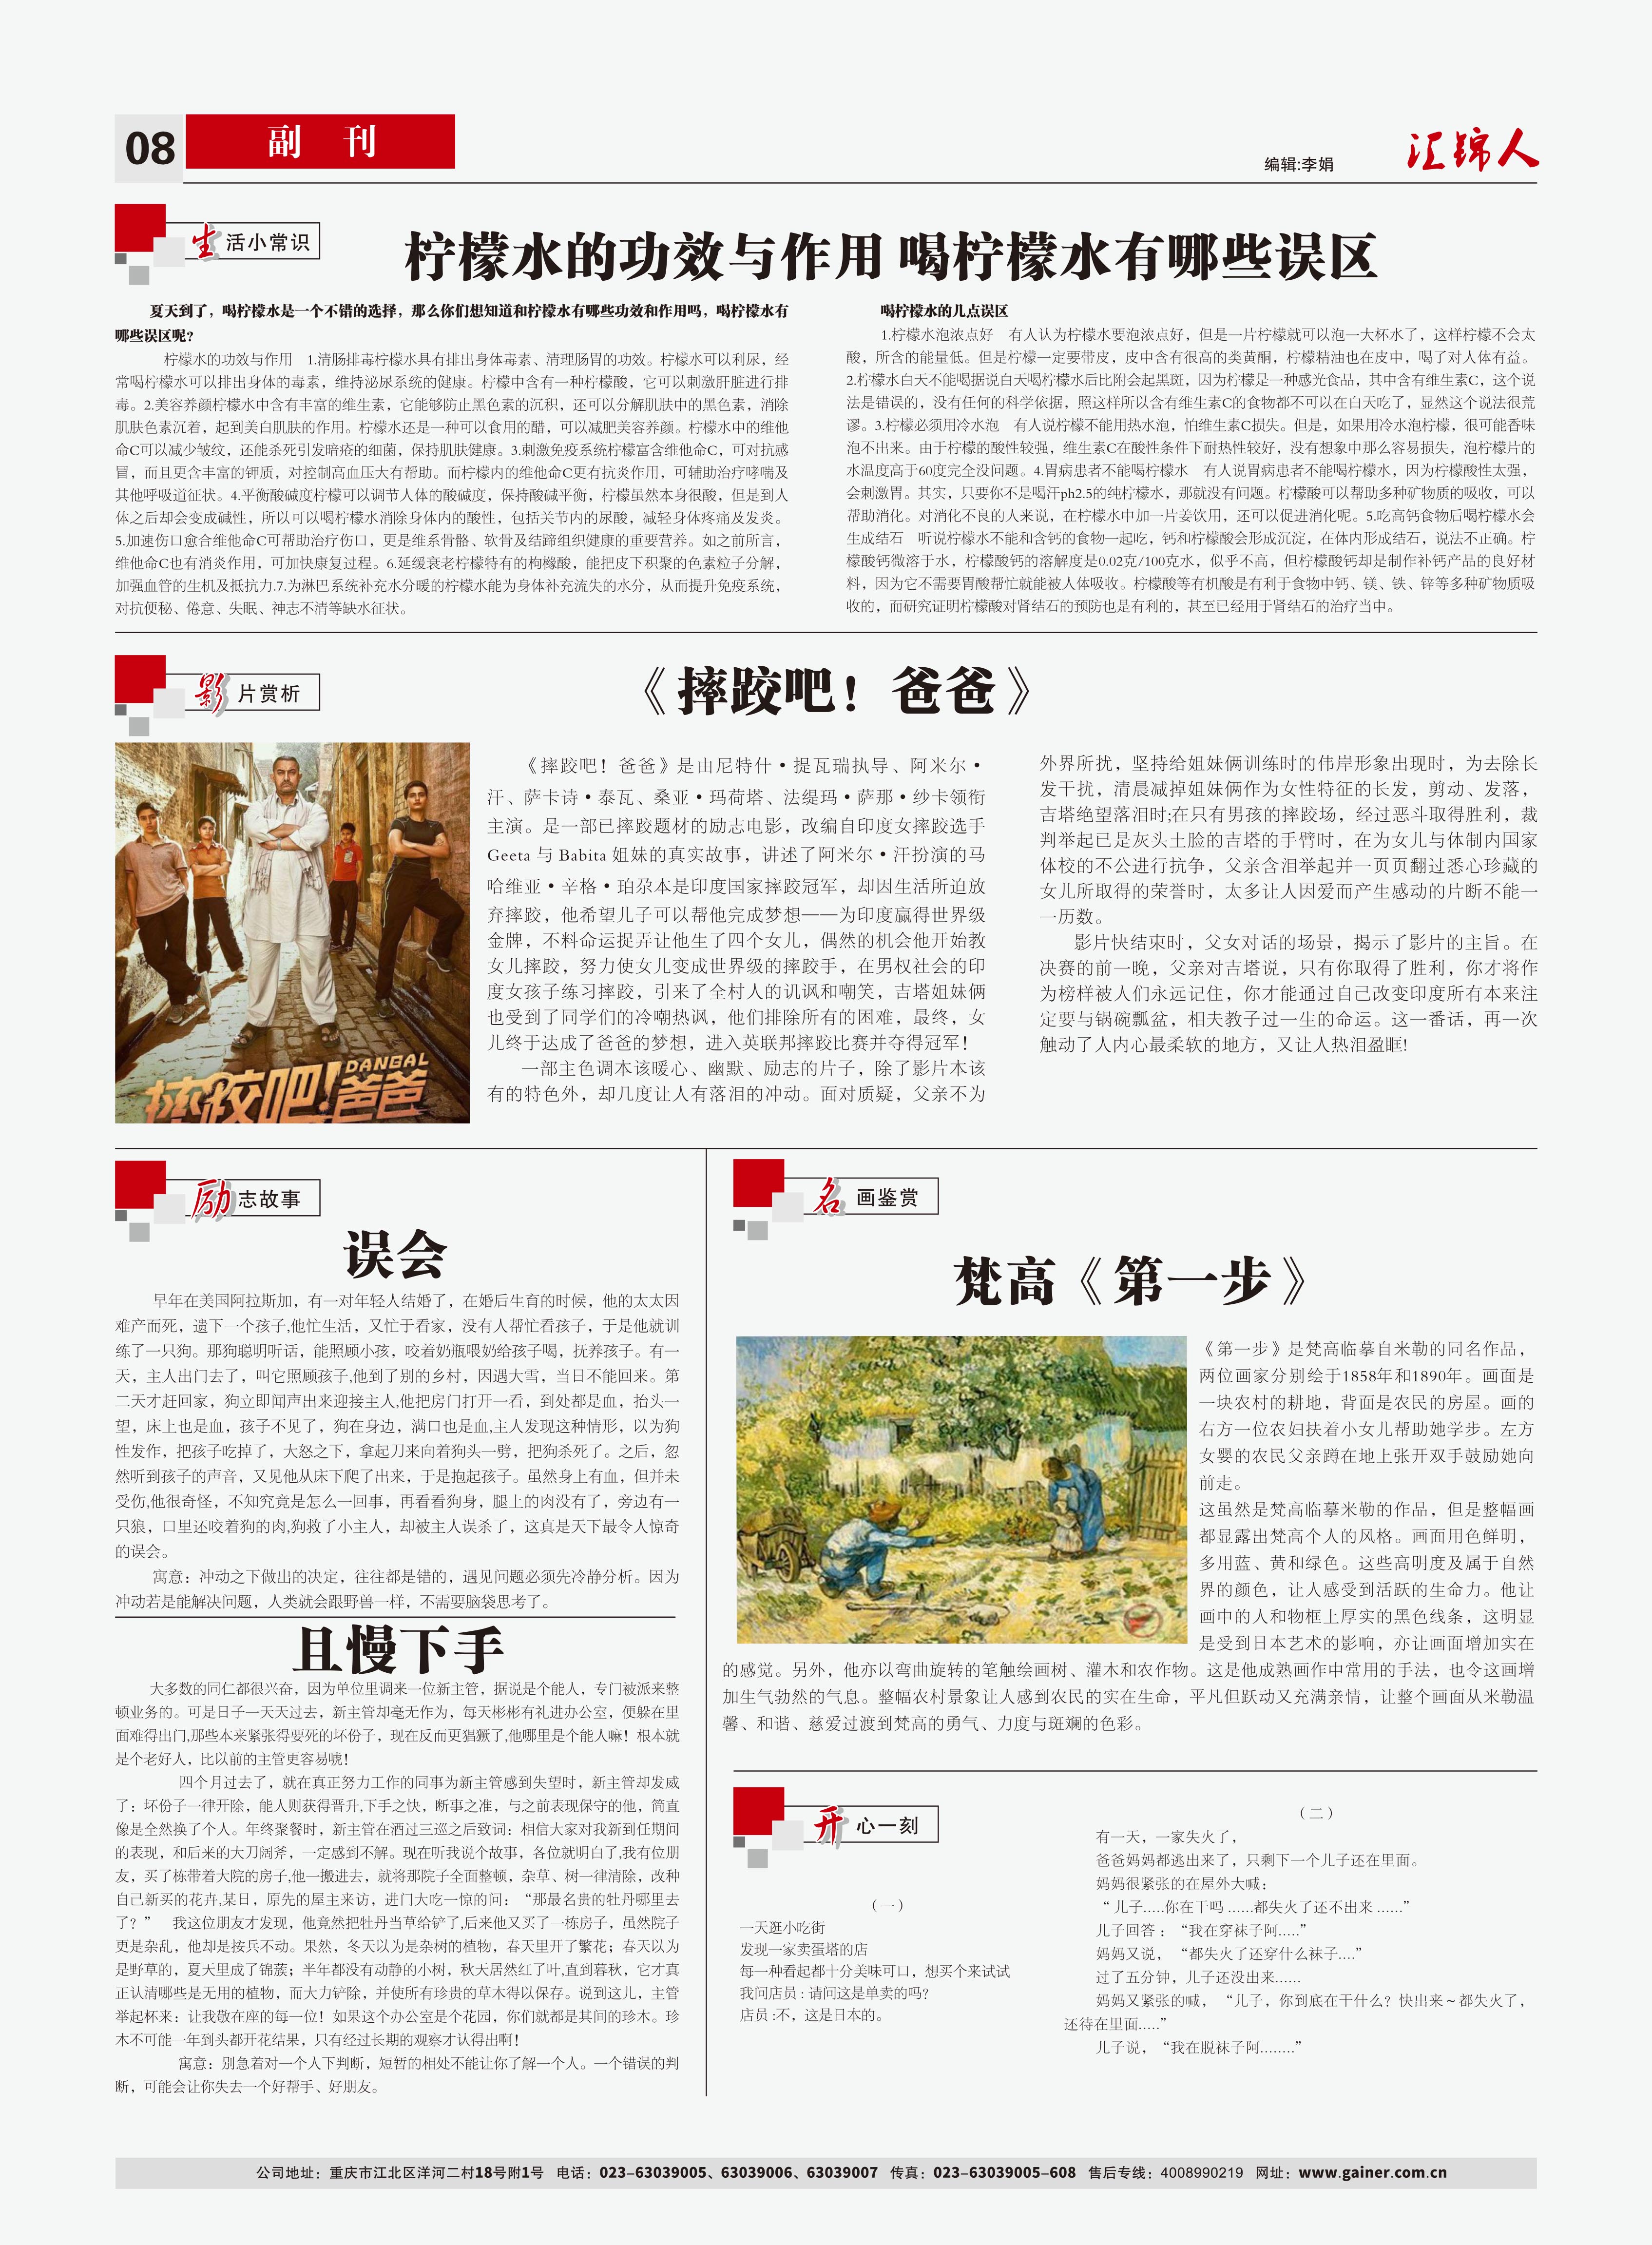 汇锦期刊第13期-出版-8.jpg